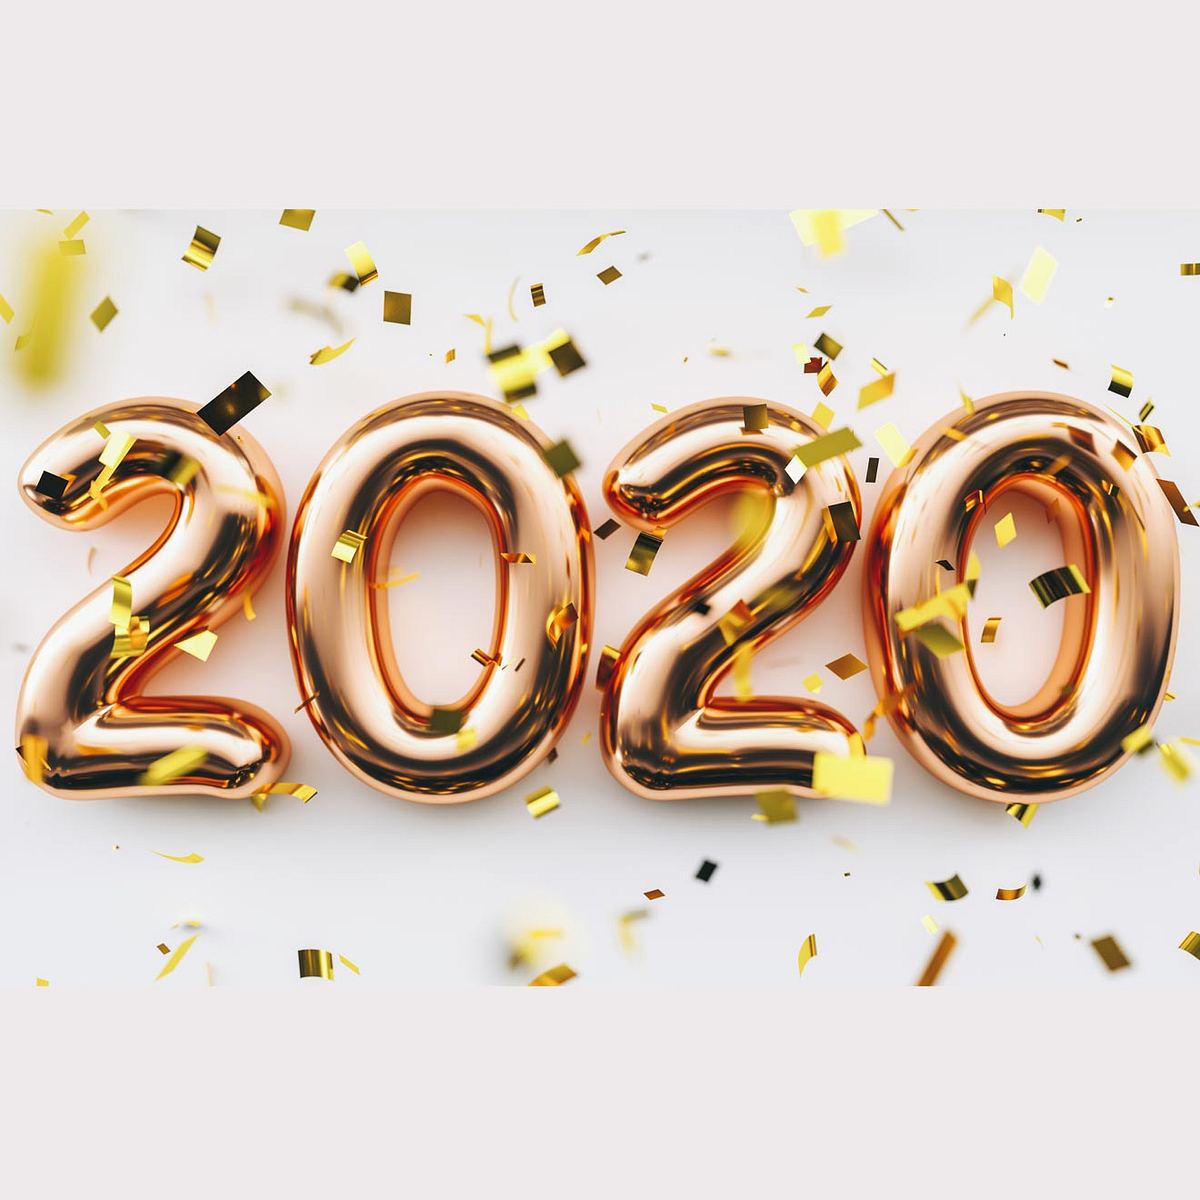 Die Trend-Pieces für 2020